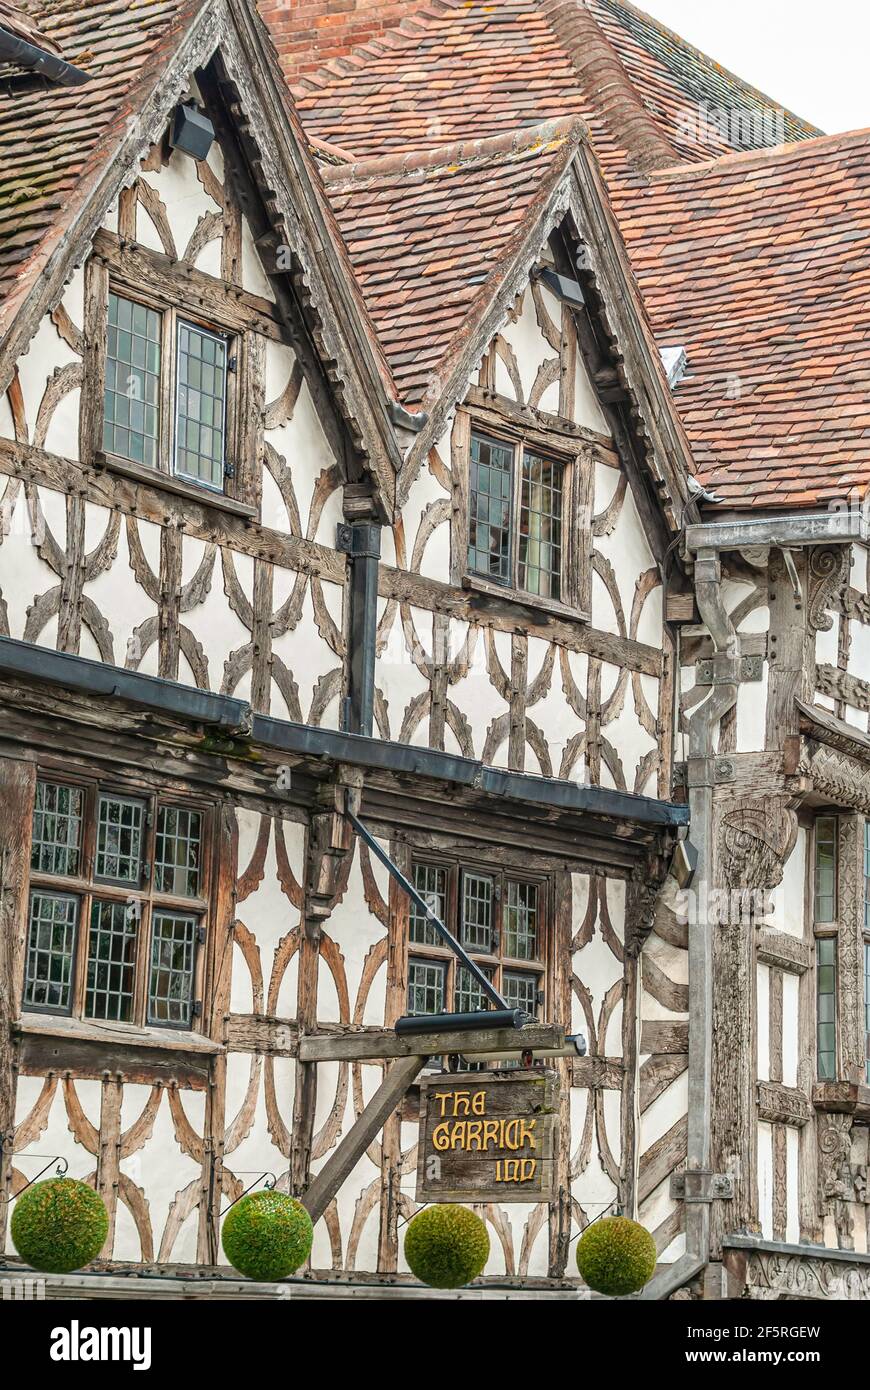 Facciata dell'antico Garrick Inn Pub a Stratford Upon Avon, Warwickshire, Inghilterra, Regno Unito Foto Stock